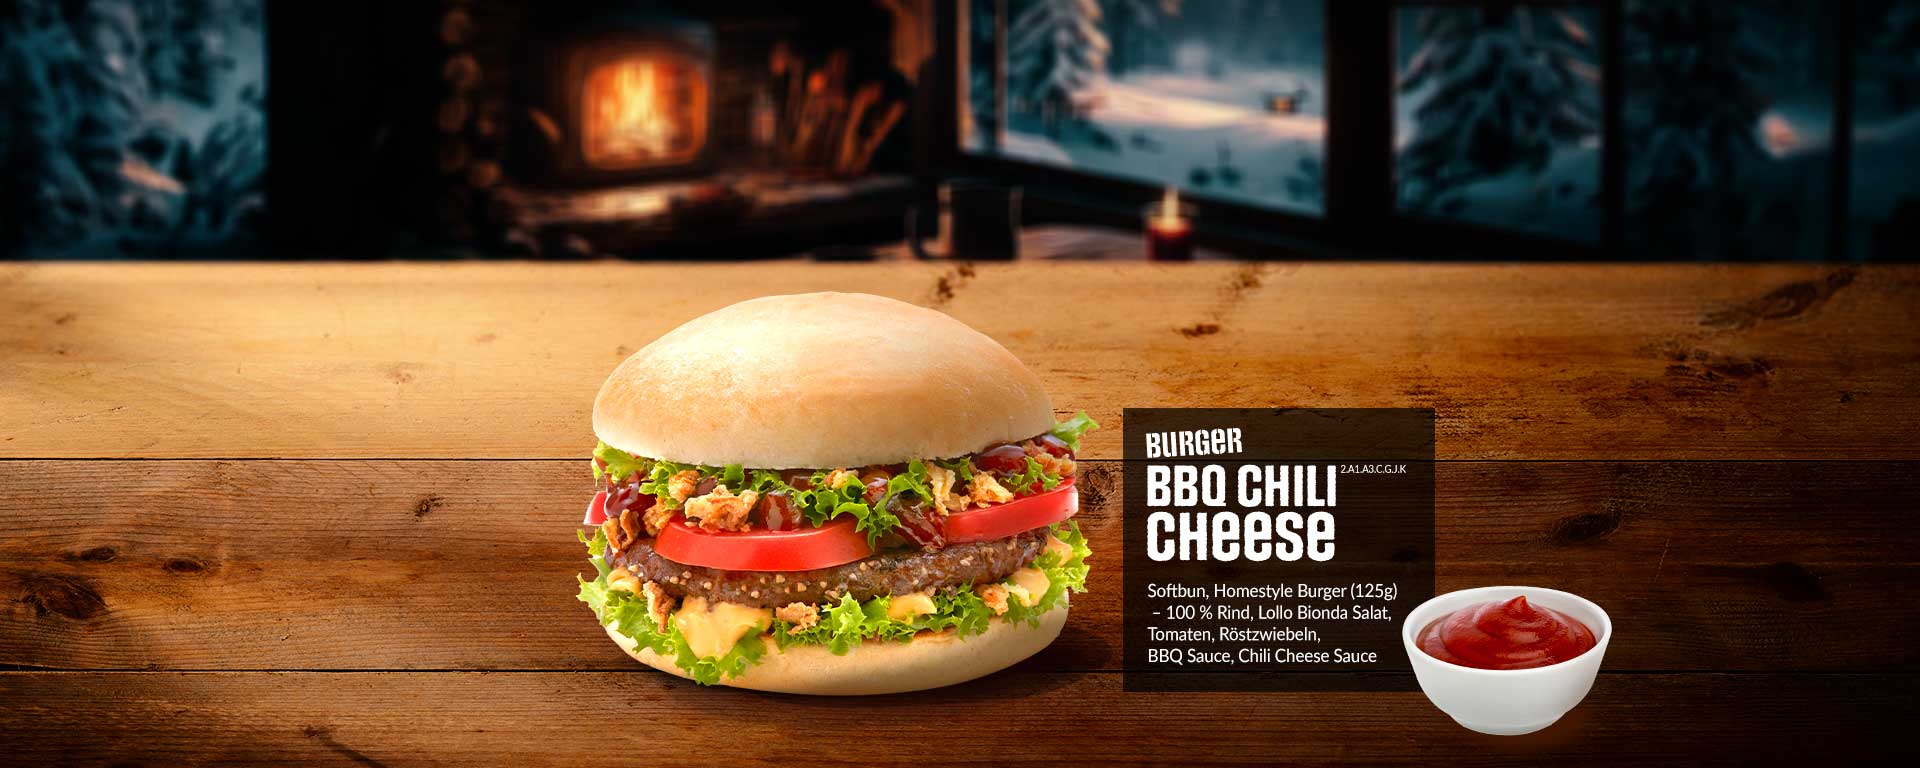 BBQ Chili Cheese Burger